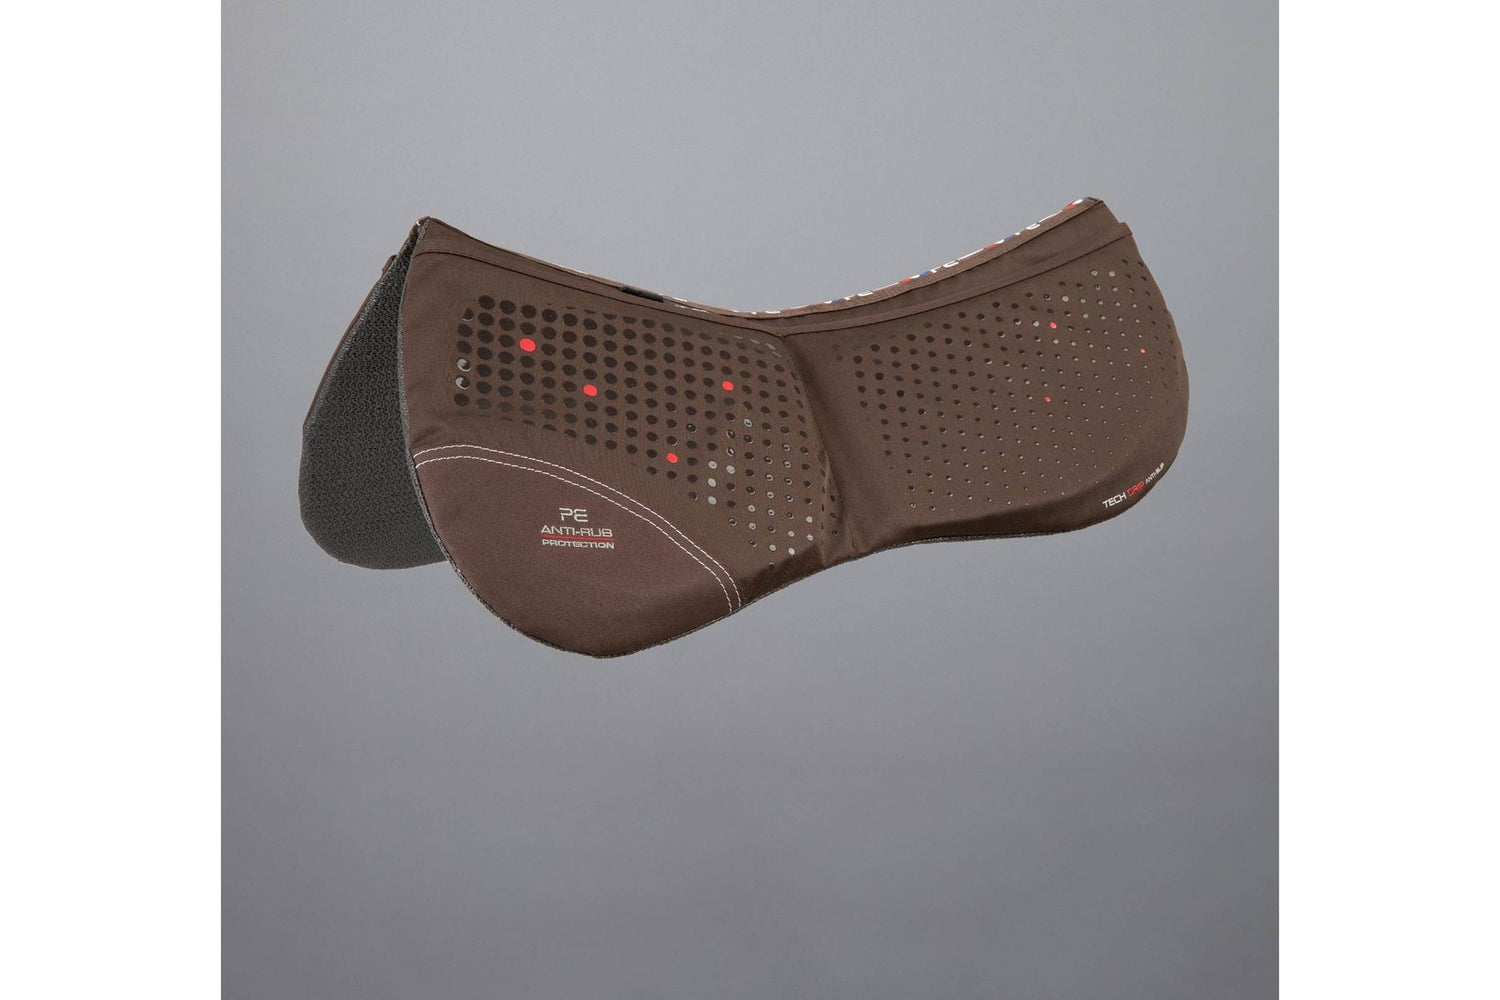 Description:Tech Grip Pro Anti-Slip Correction Saddle Pad_Colour:Brown_Position:1